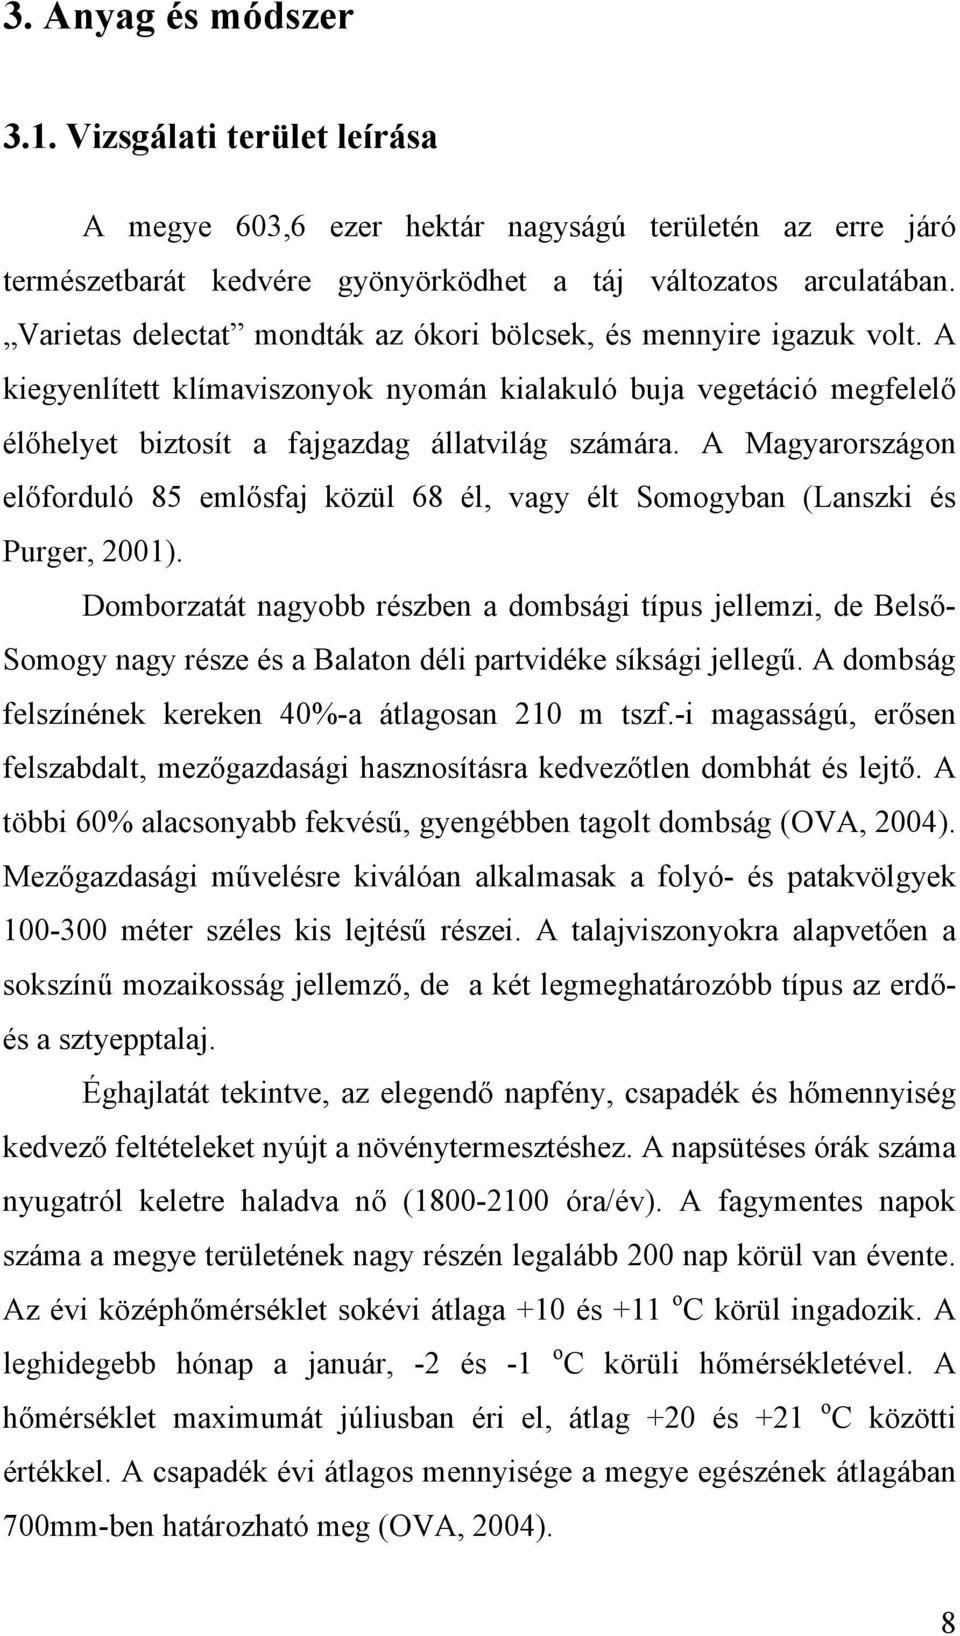 A Magyarországon előforduló 85 emlősfaj közül 68 él, vagy élt Somogyban (Lanszki és Purger, 2001).